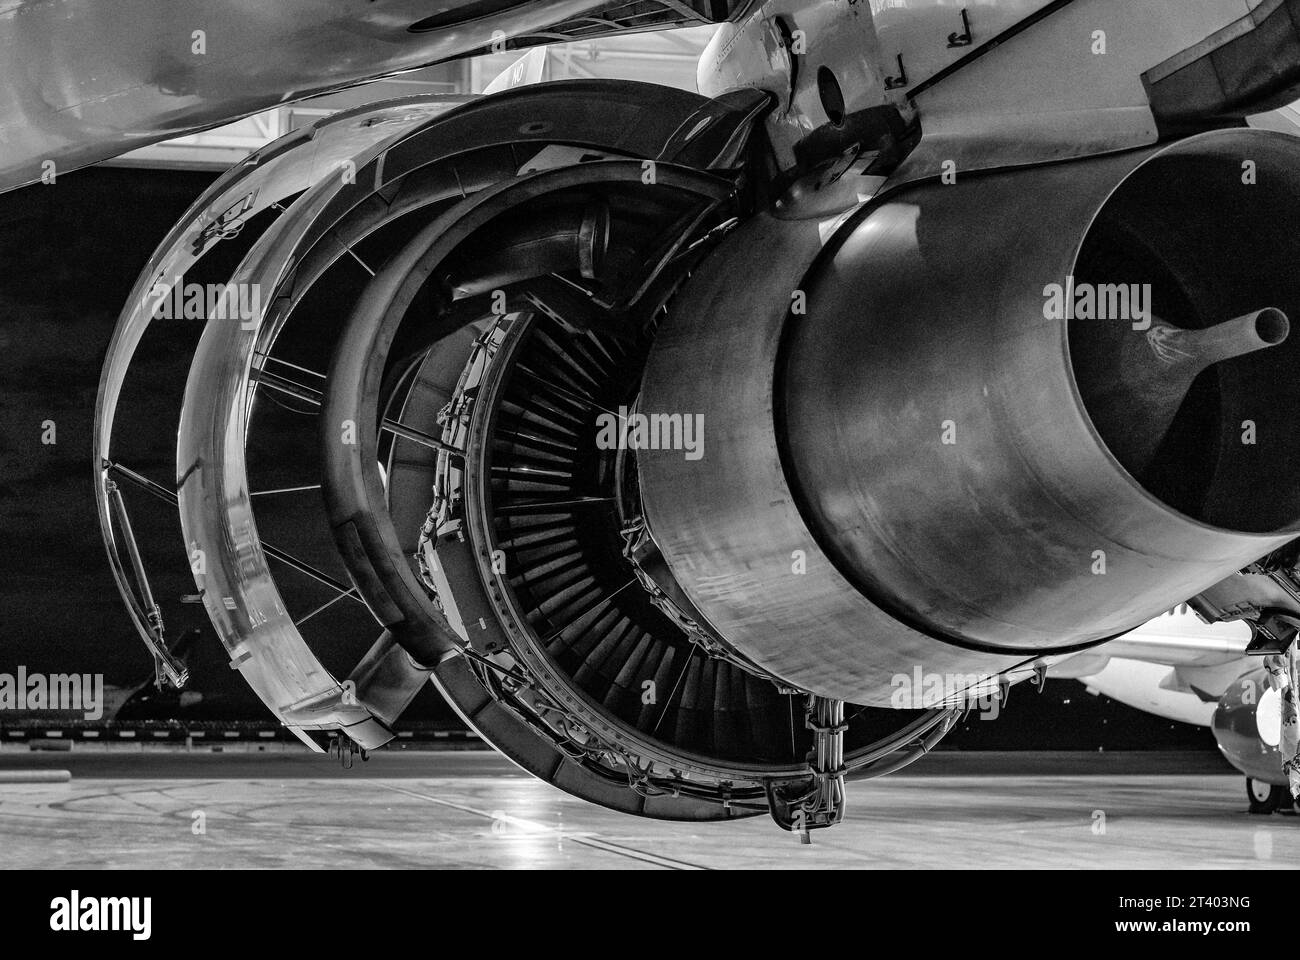 Dettagli dell'aeromobile. Manutenzione di motori aerei nell'hangar di notte. Foto in bianco e nero. Foto Stock